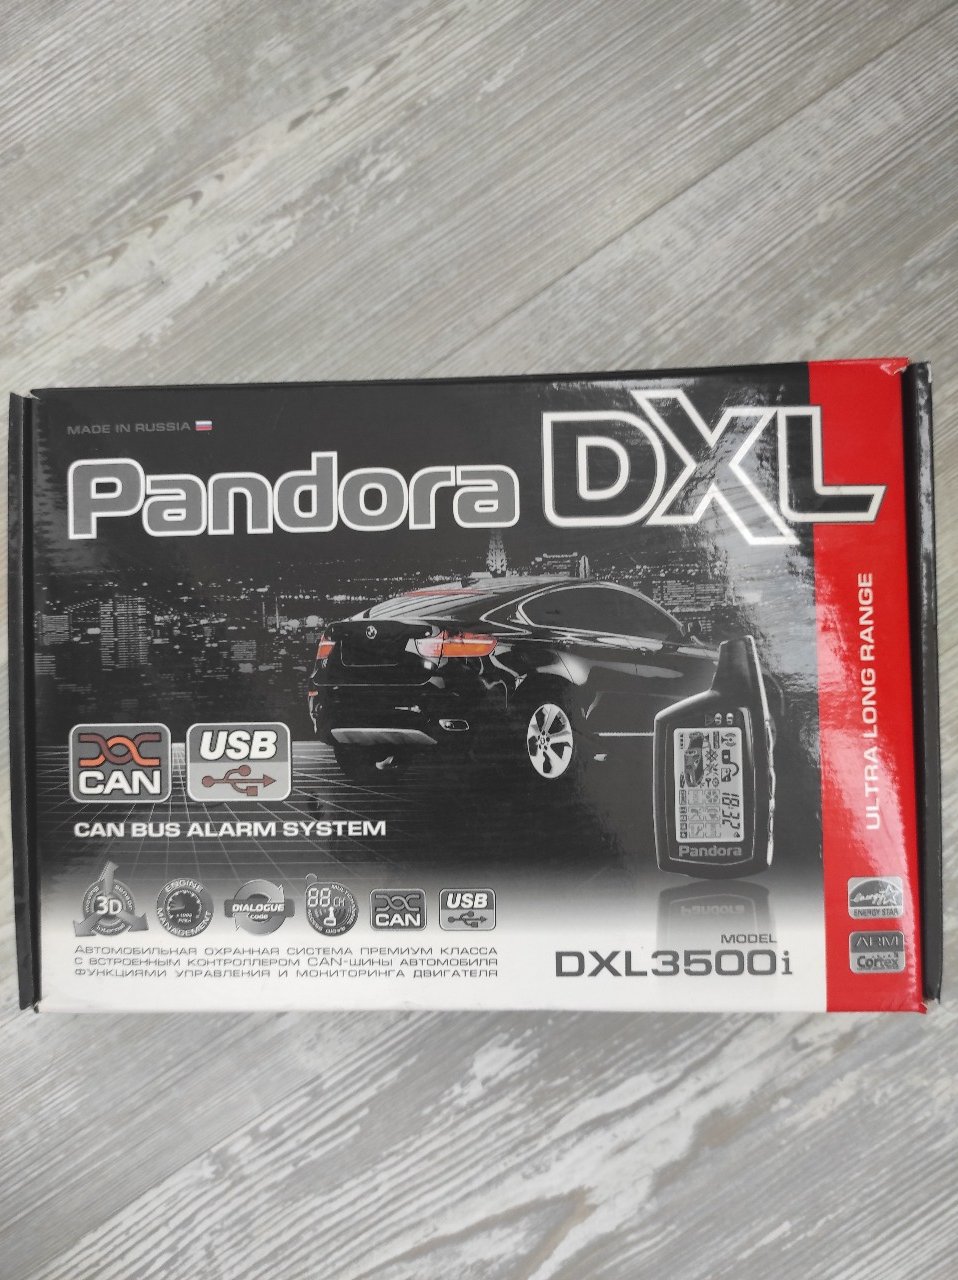 Pandora dxl 3000. Pandora DXL 3500. Pandora DXL 3500i. Автосигнализация pandora DXL 3500i. Пандора DXL 3000.